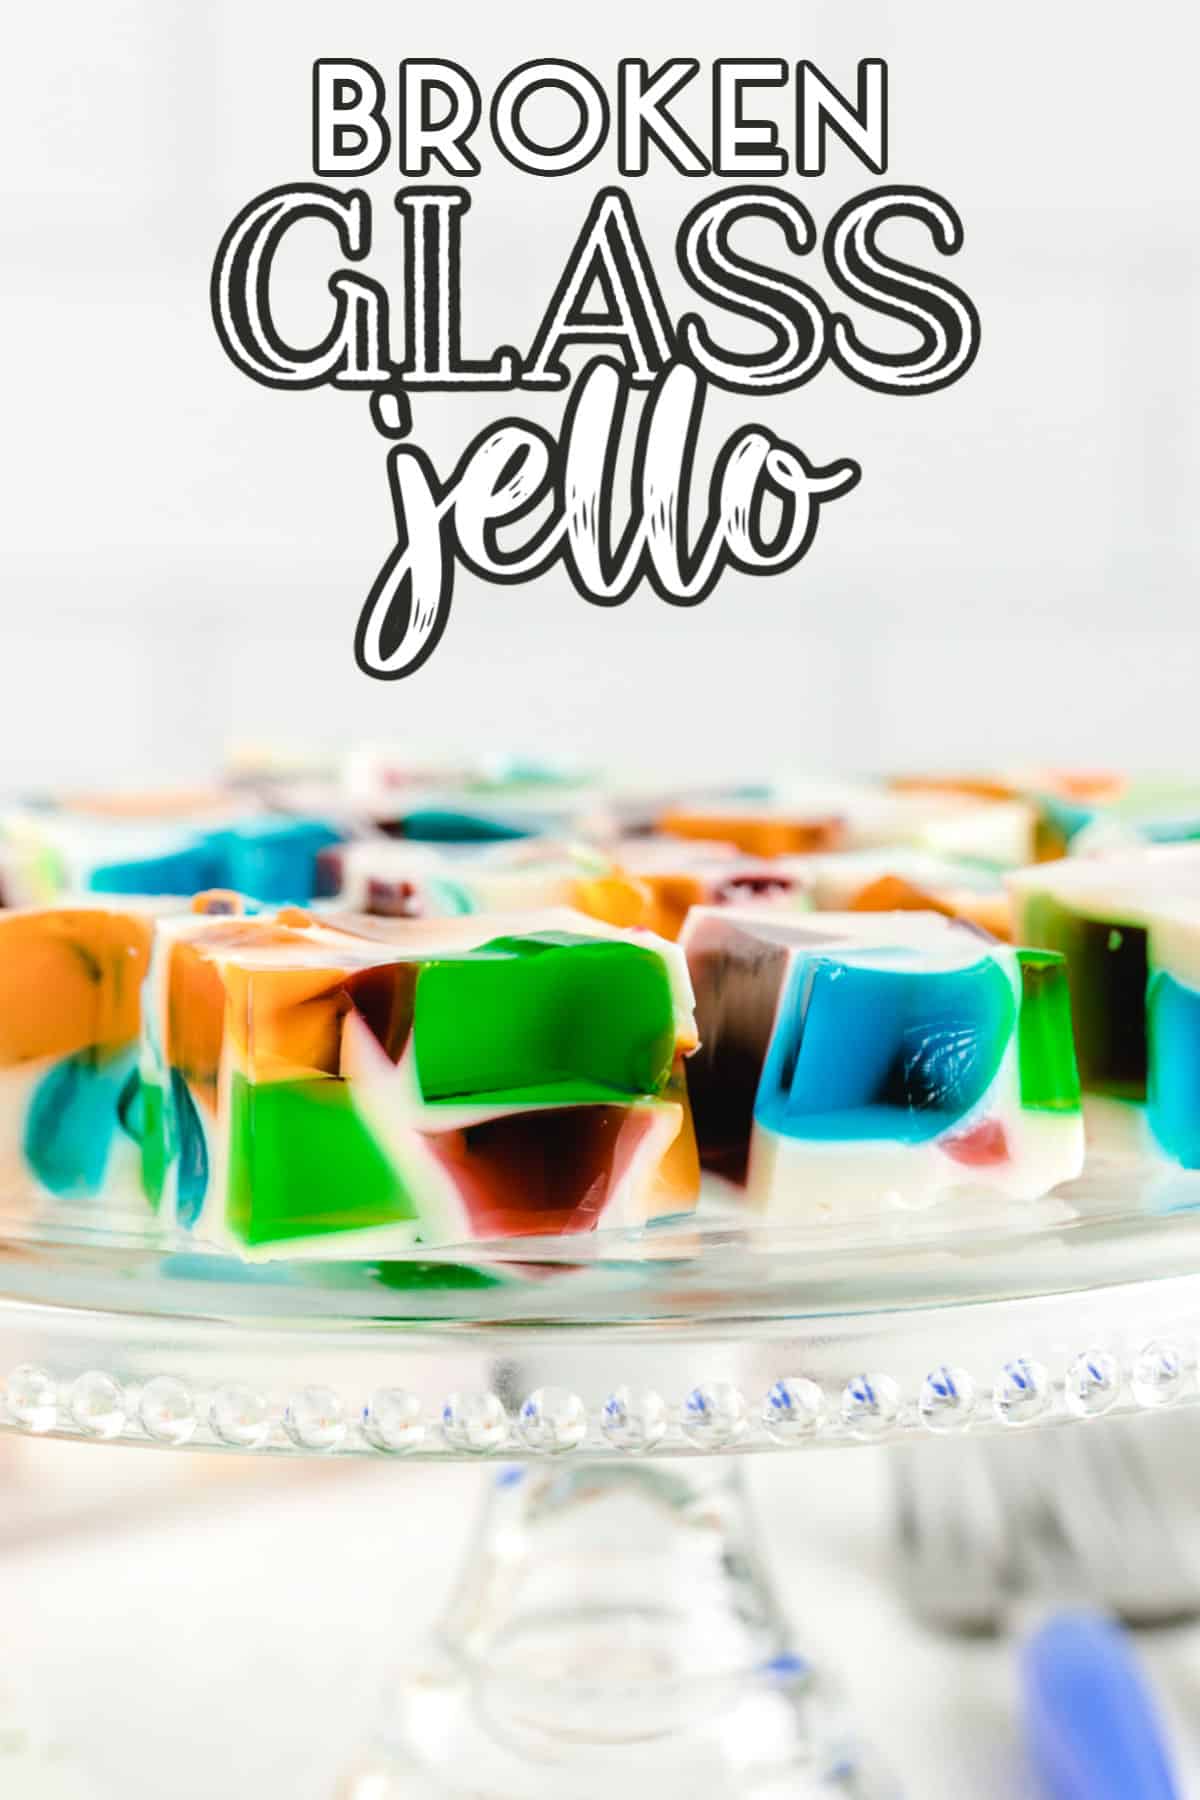 Broken Glass Jello on a glass platter